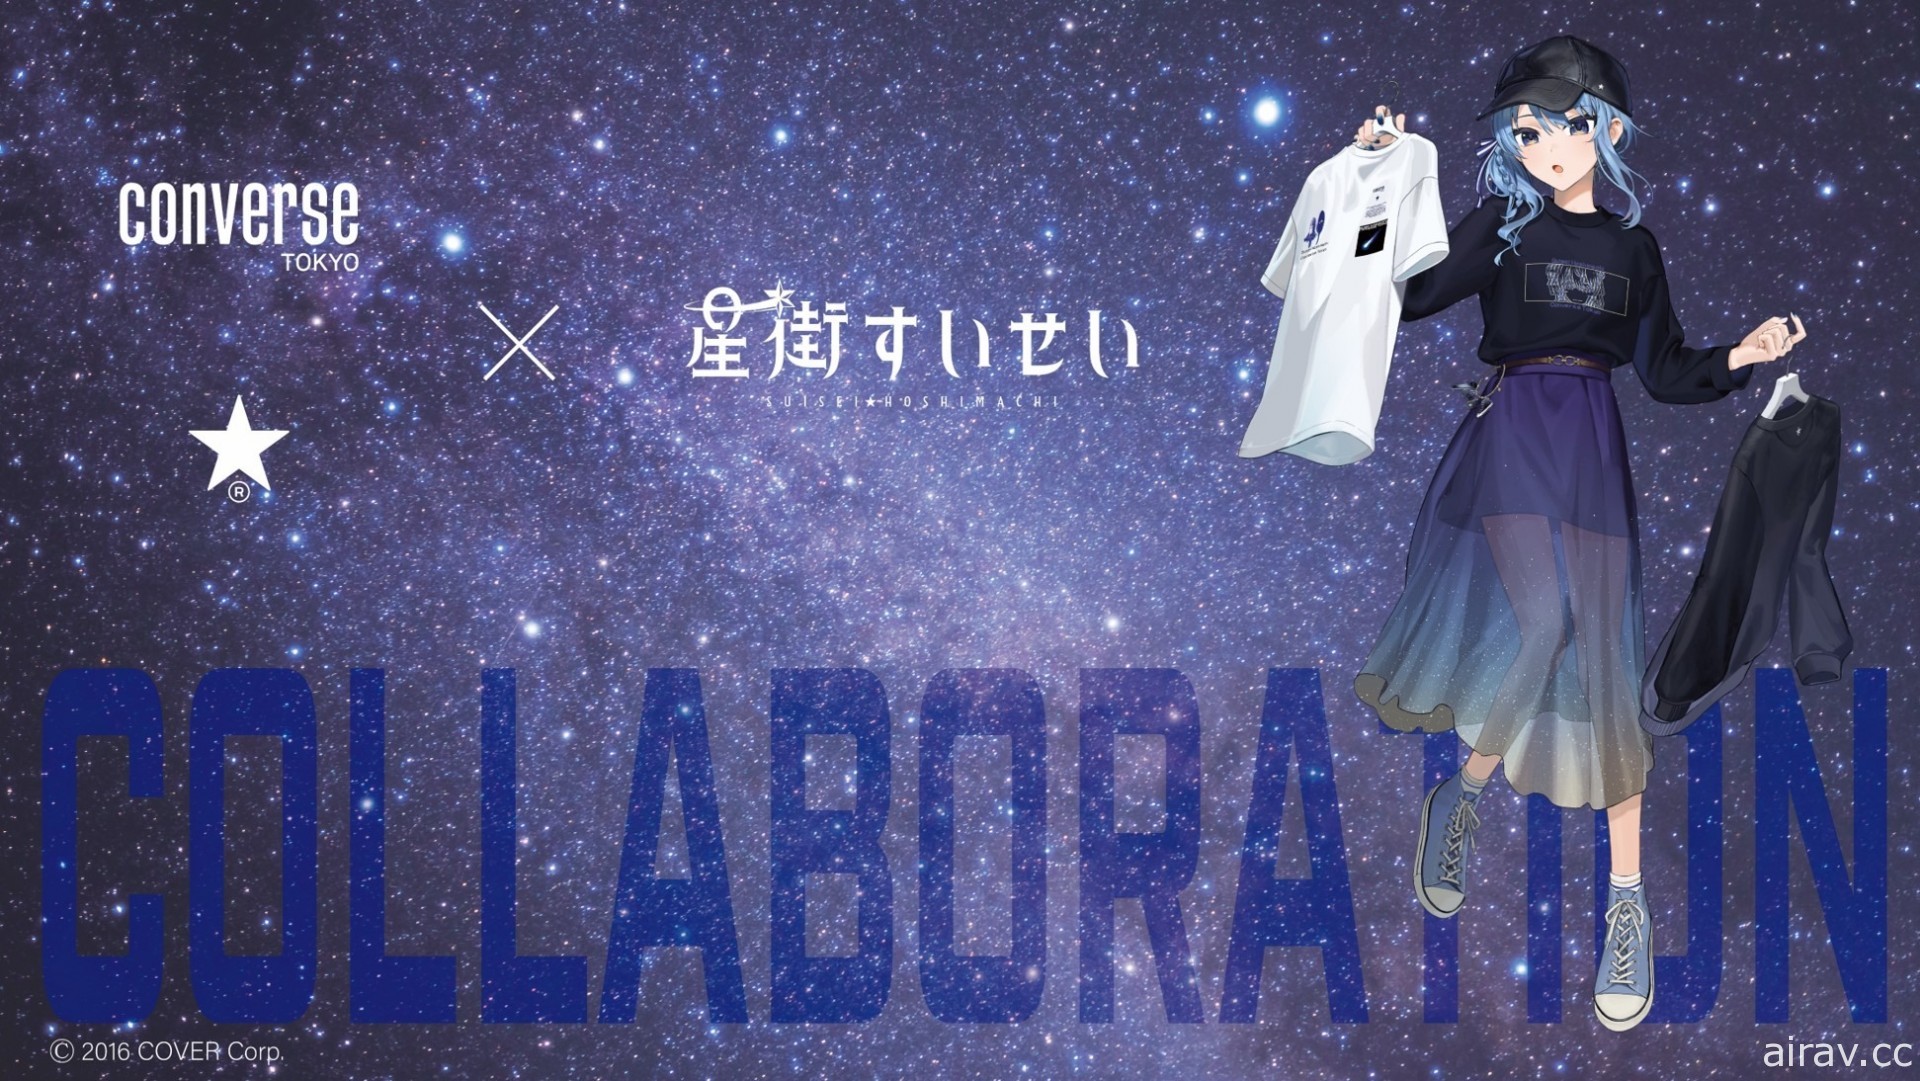 星街彗星与 CONVERSE TOKYO 展开合作 推出联名服饰以及周边商品